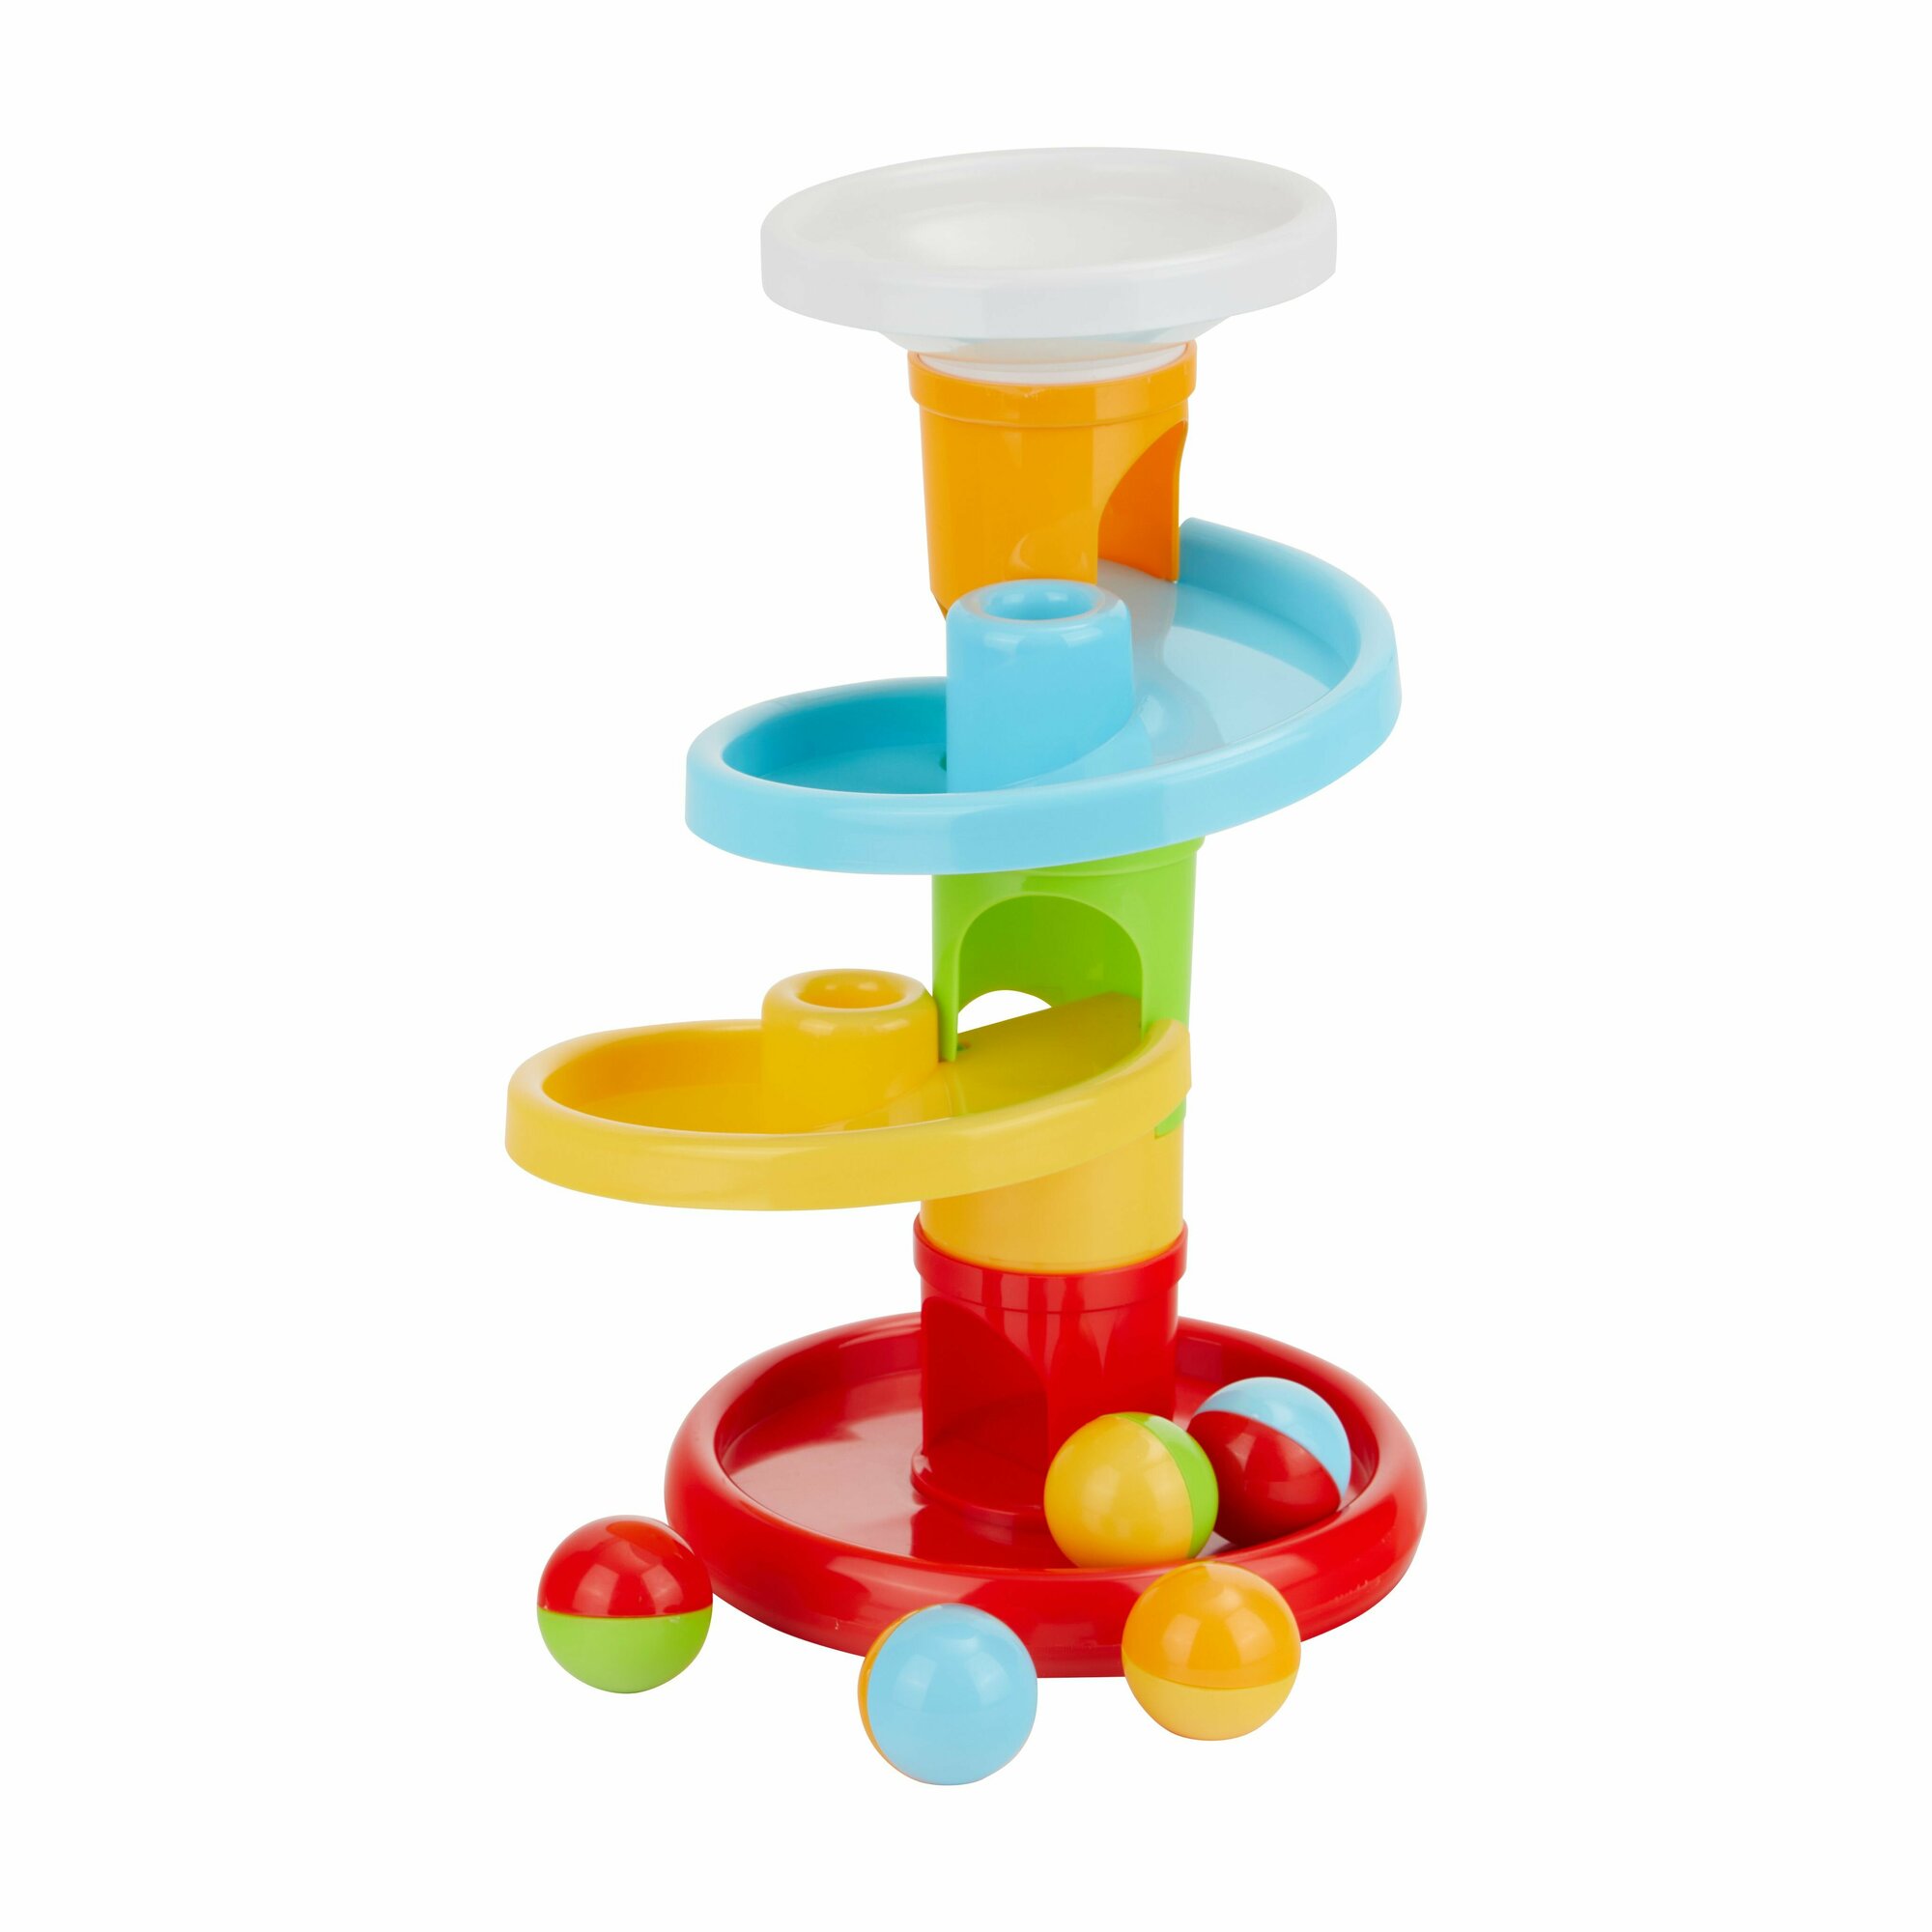 Развивающая игрушка Башня с цветными мячиками Parkfield, 81531